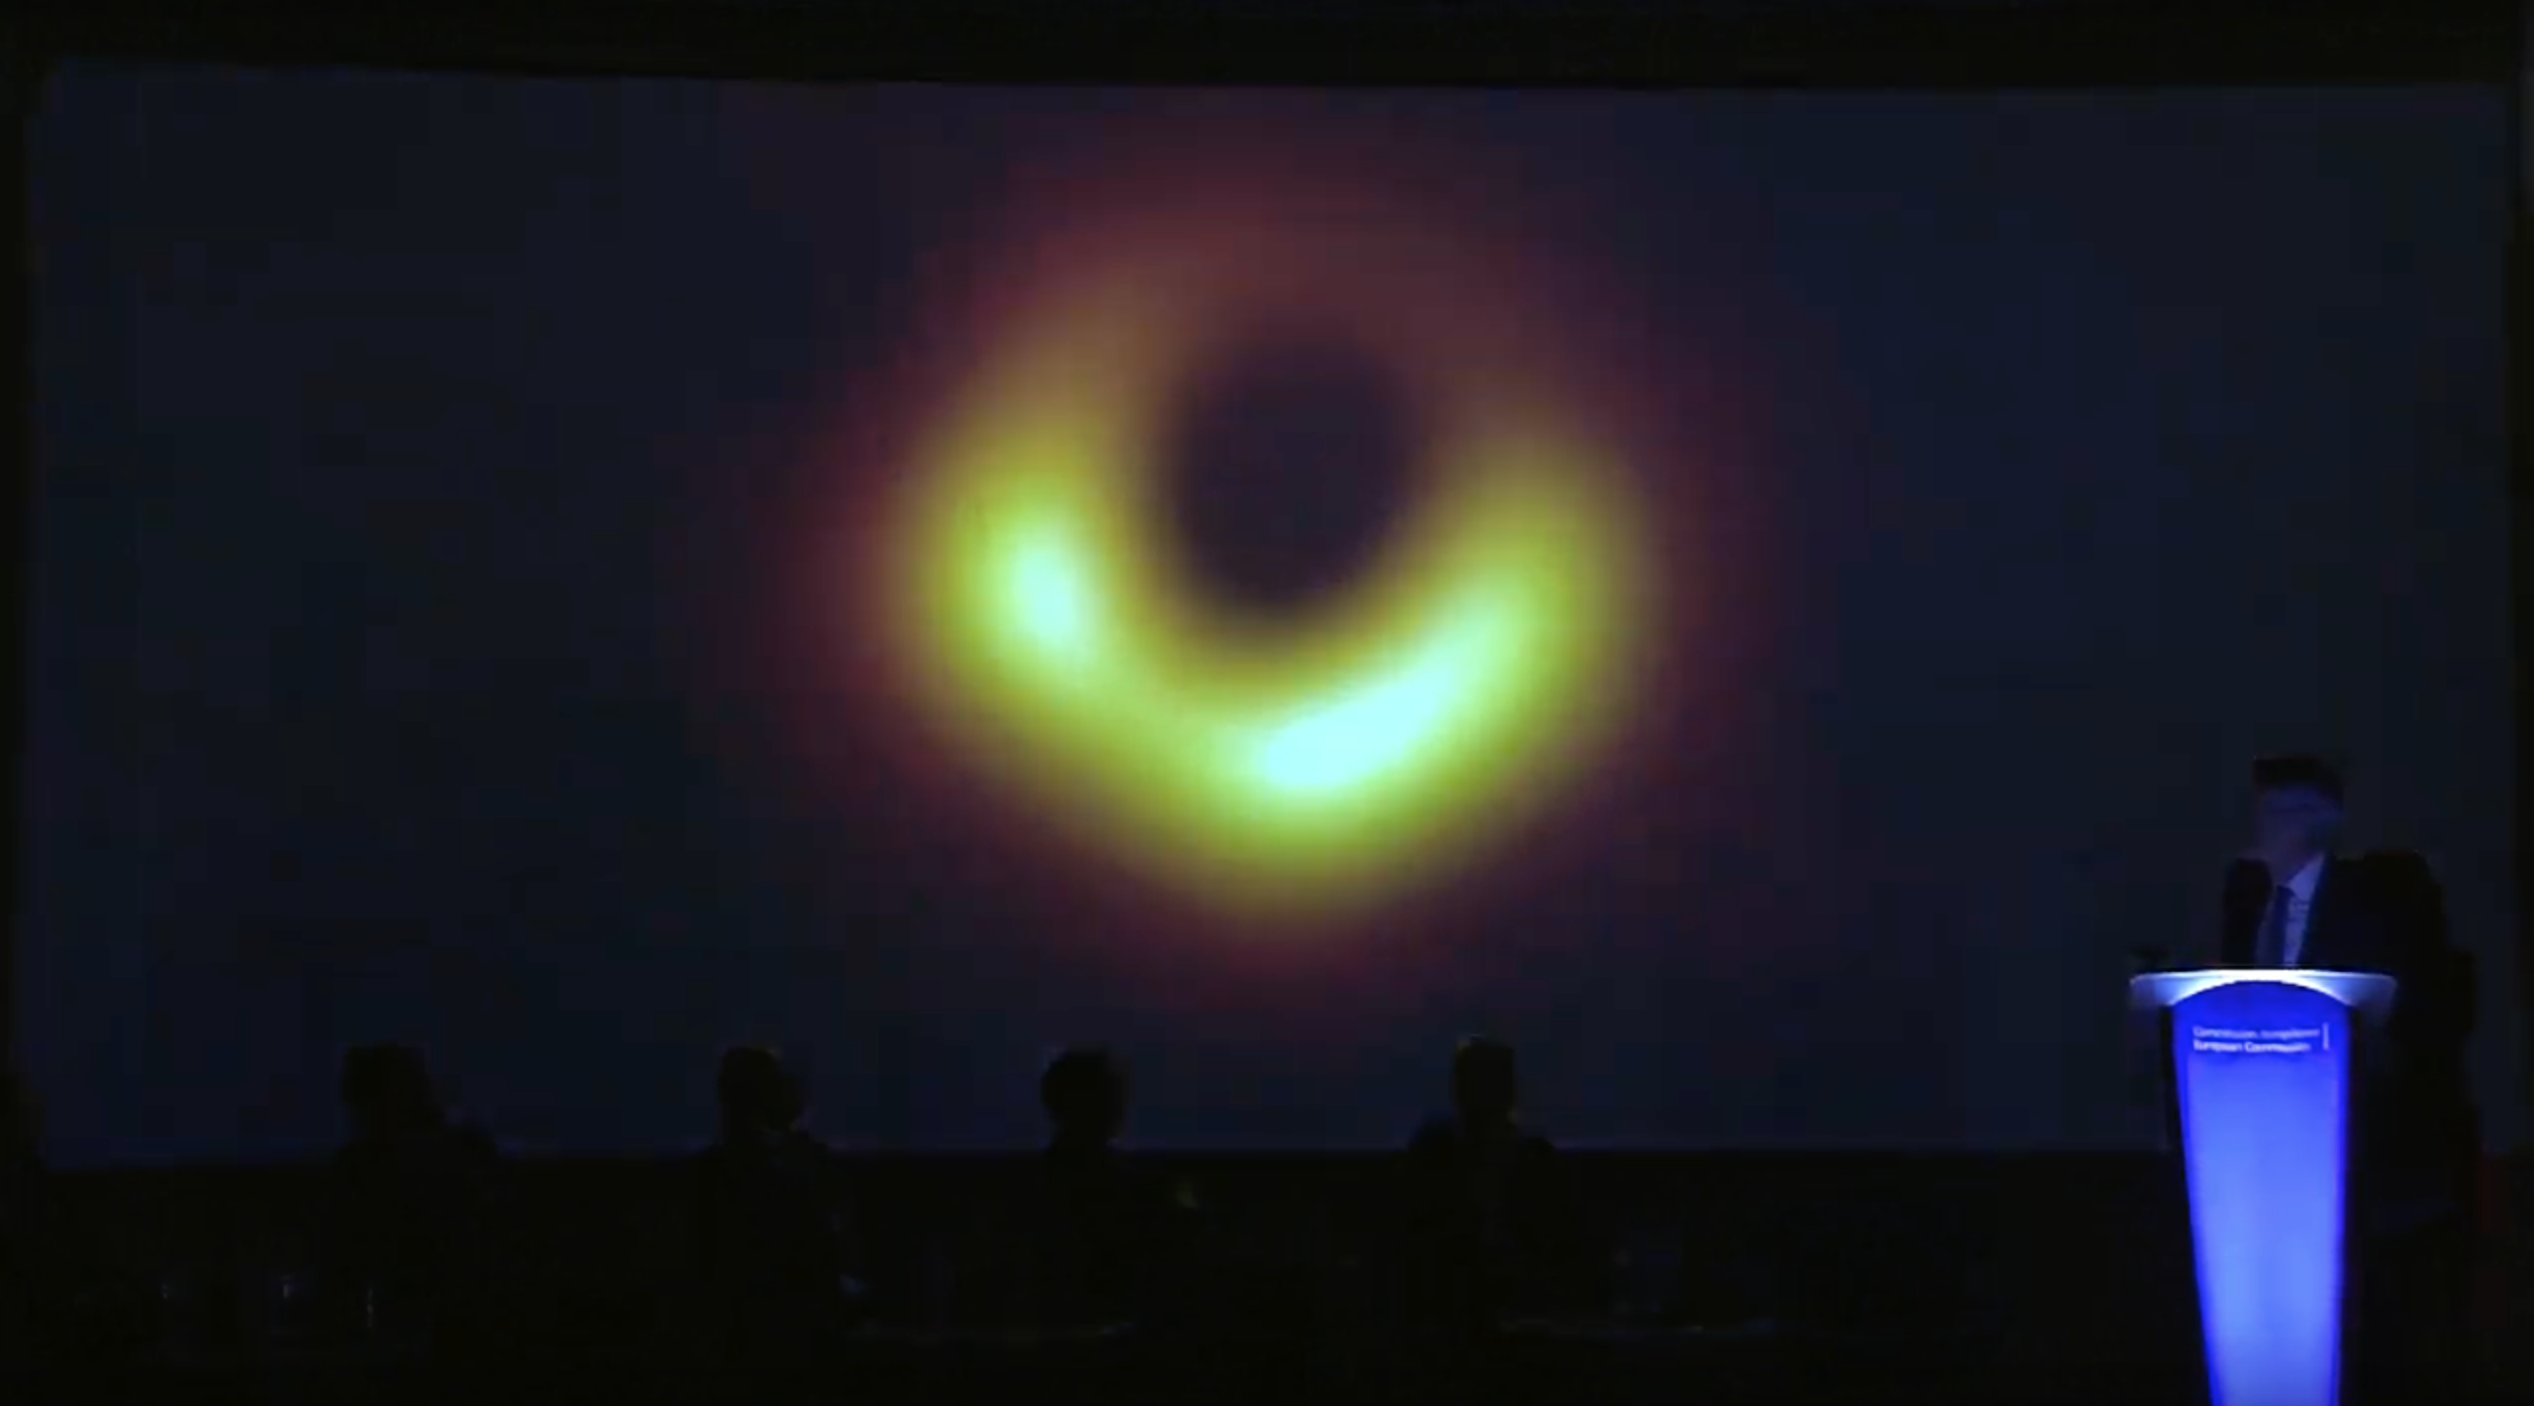 Primera imagen de la historia de un agujero negro.